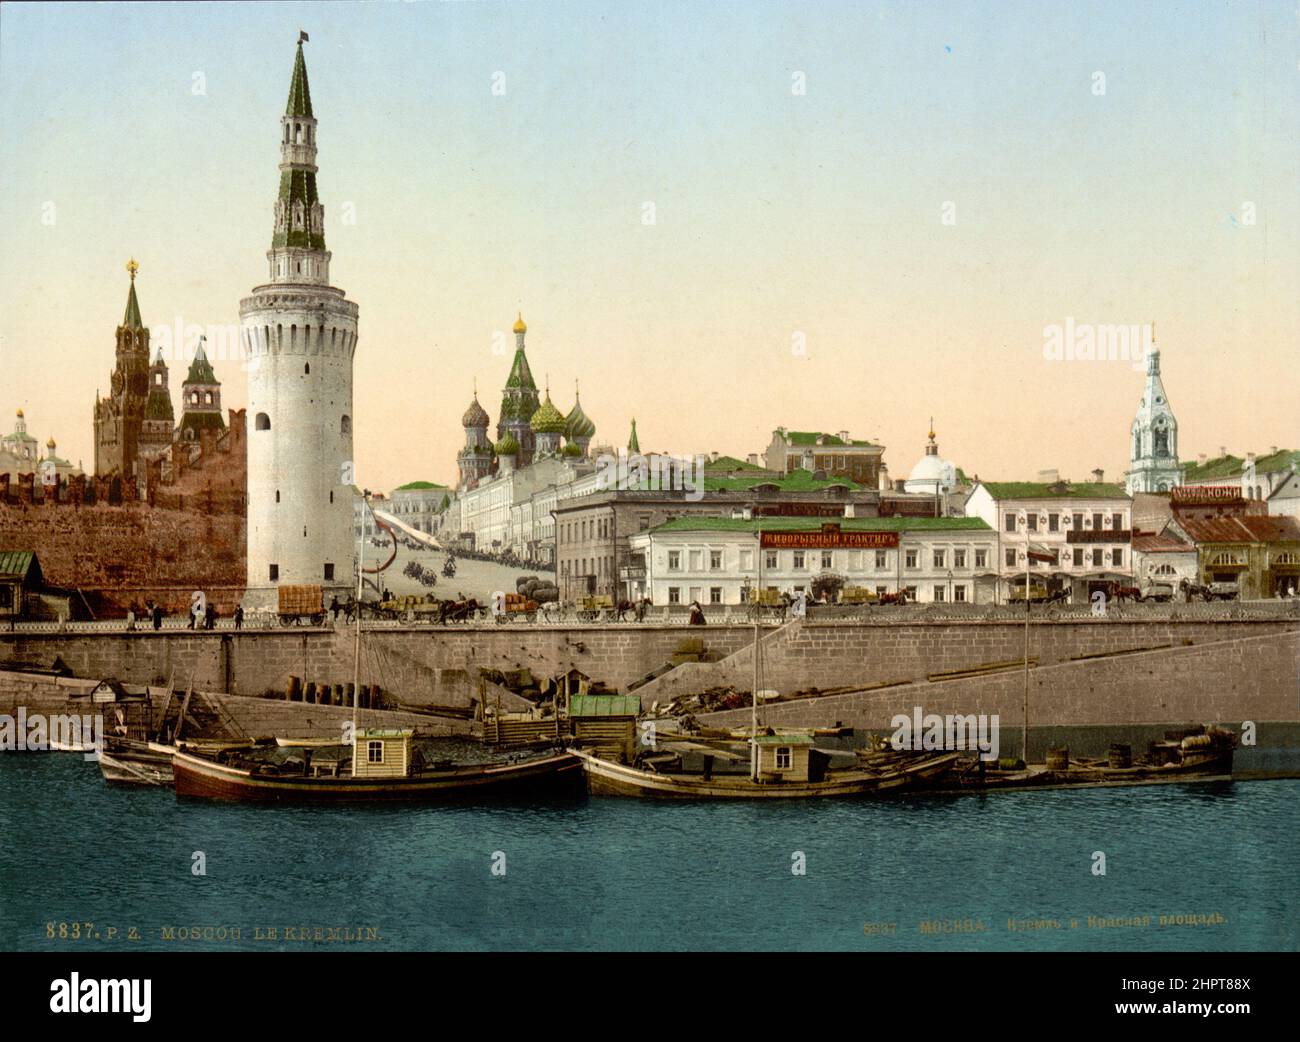 Photo du Kremlin de Moscou datant du 19th siècle avec la tour Spasskaya (arrière-plan), la tour Vodovzvodnaya en premier plan et la cathédrale Saint-Basile. Empire russe. Banque D'Images